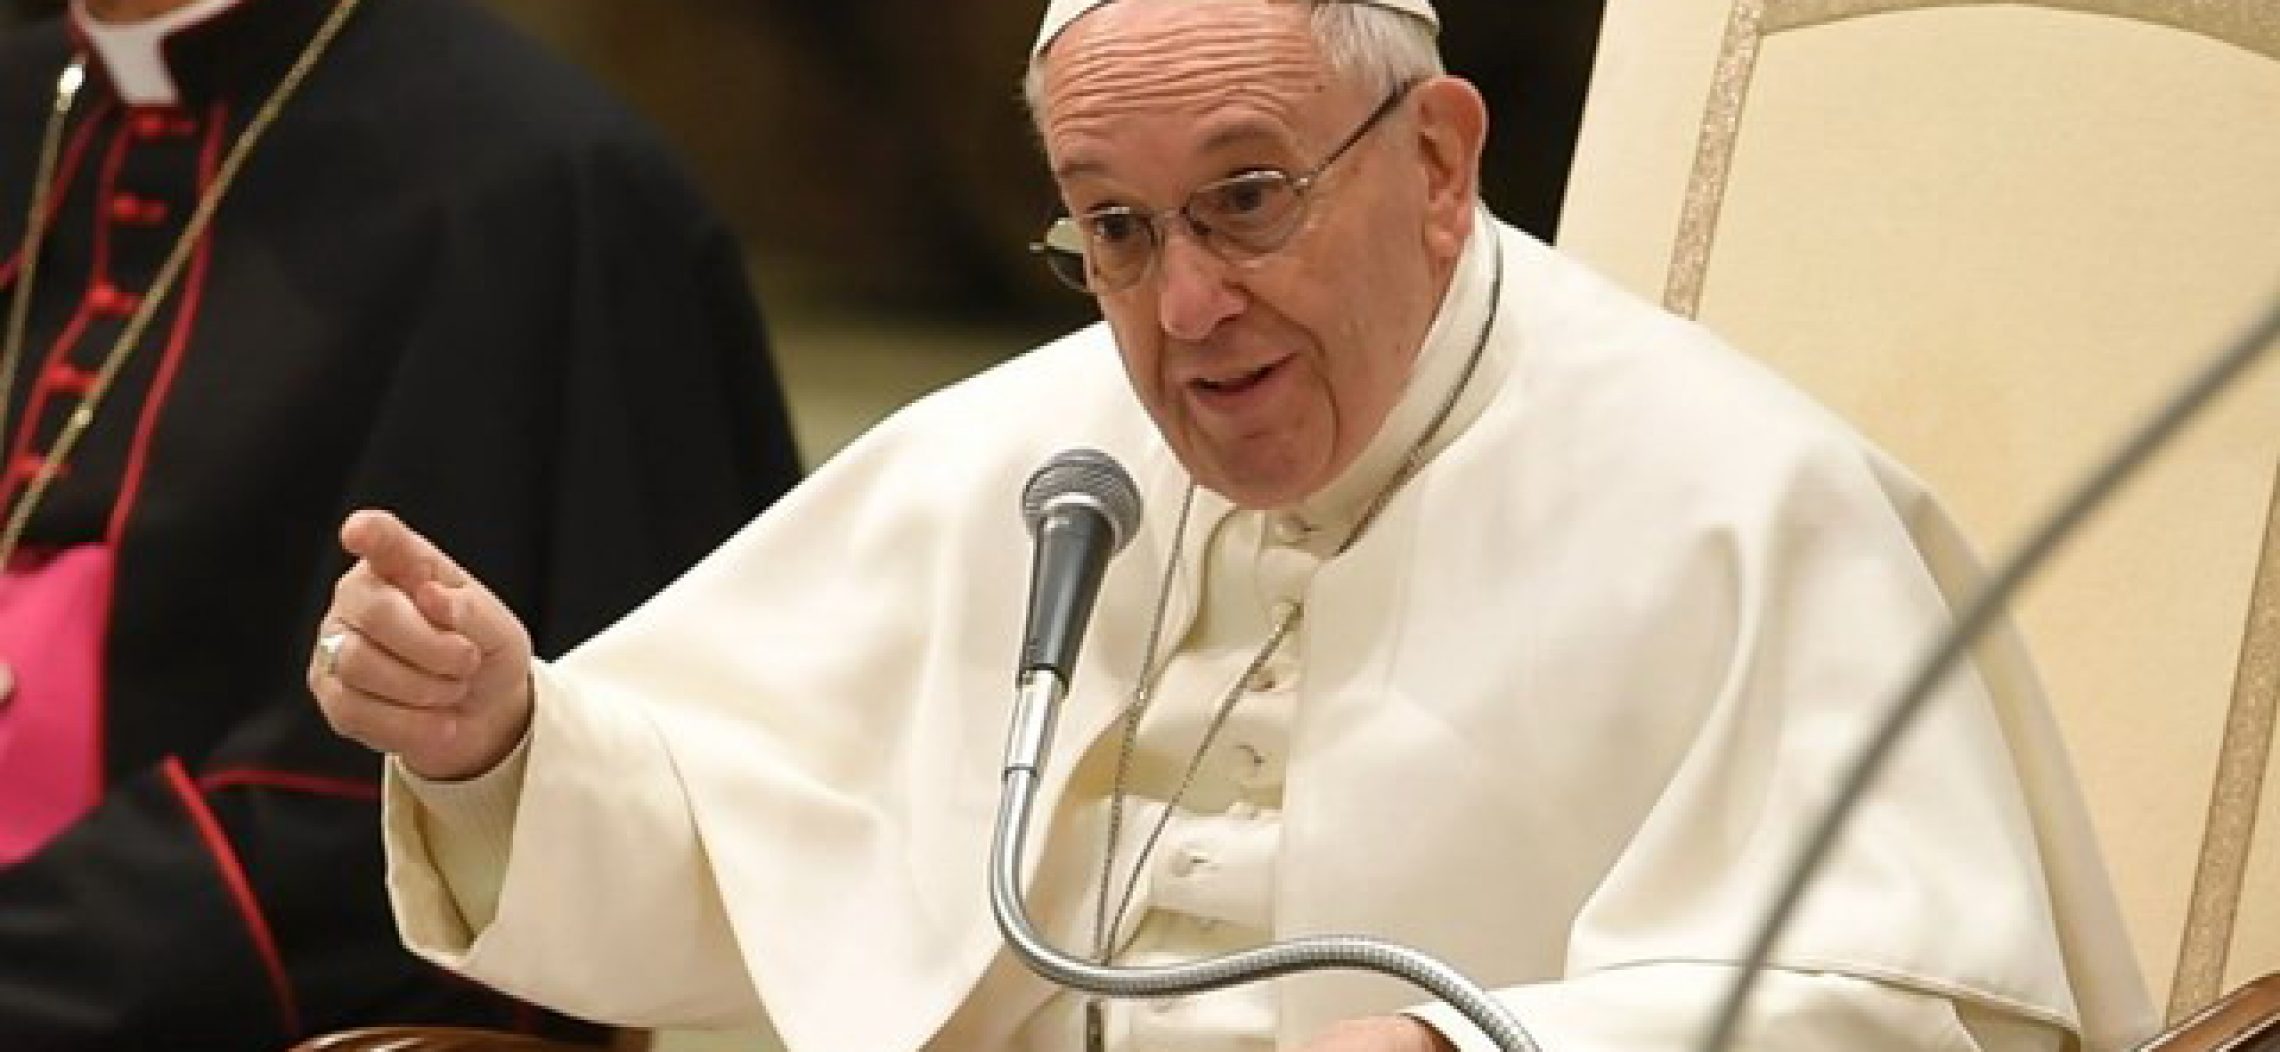 “Pecado rompe relação com Deus e com os irmãos”, diz papa em Audiência